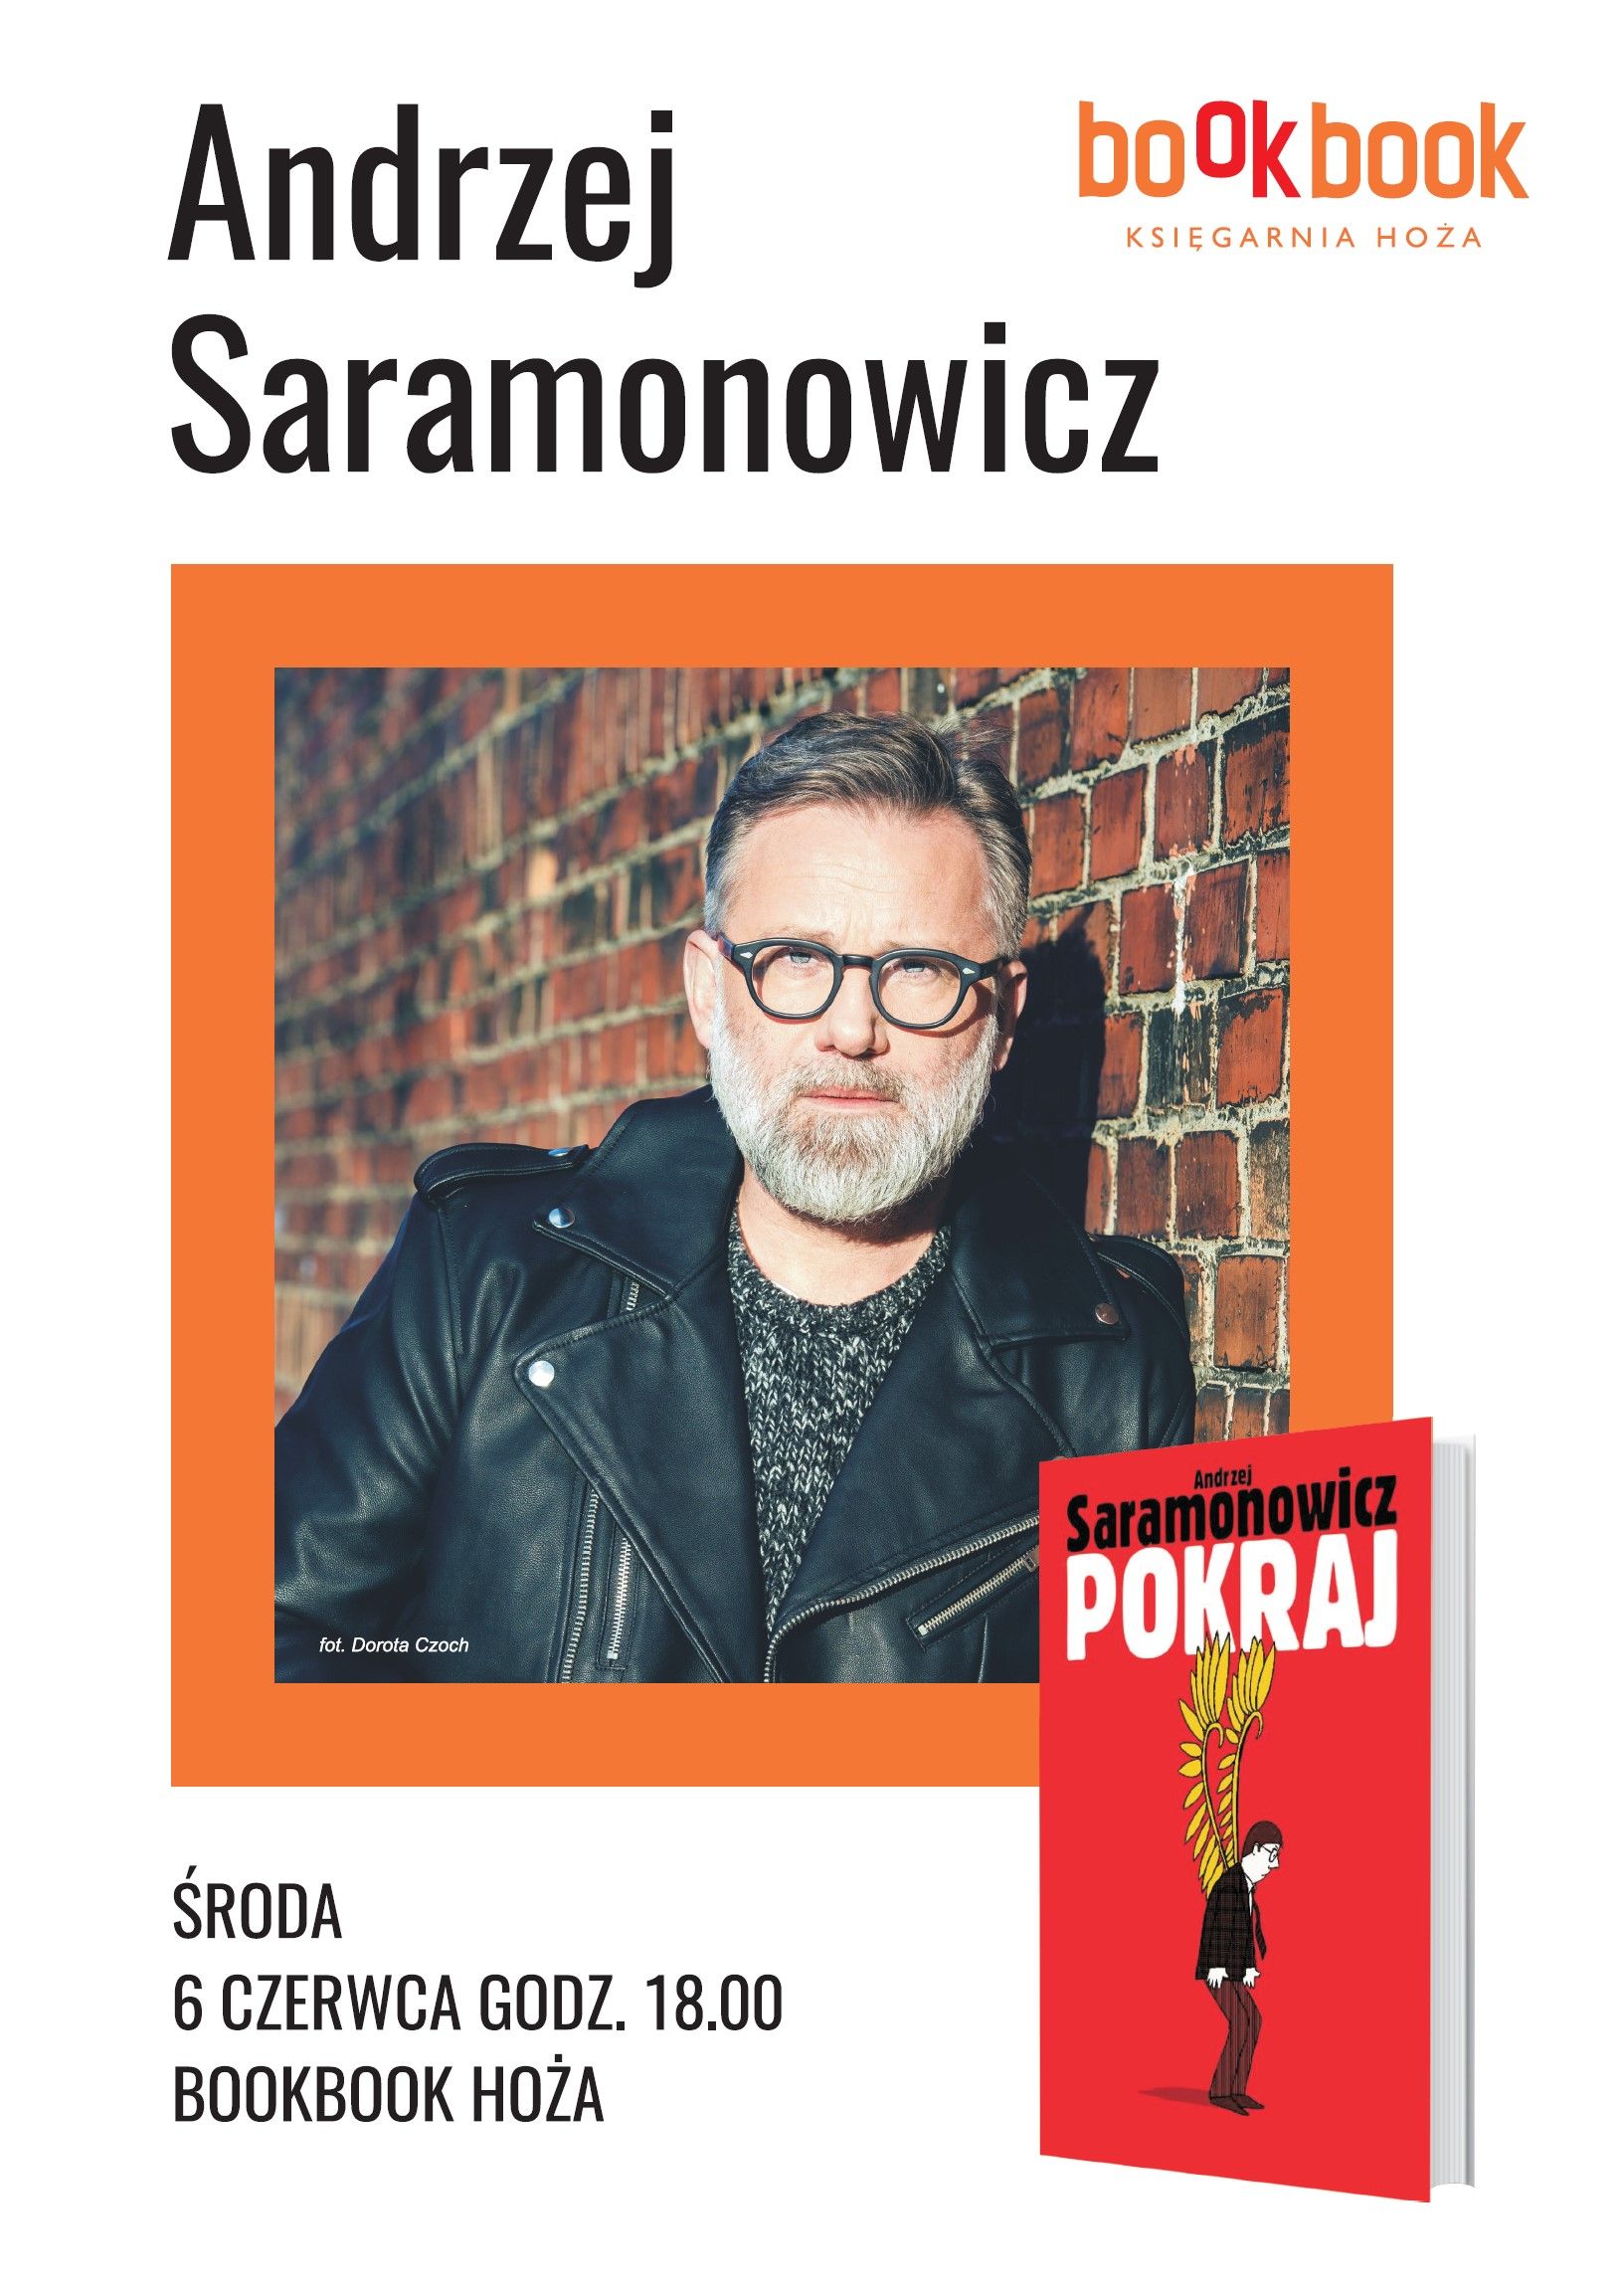 BookBook, Andrzej Saramonowicz